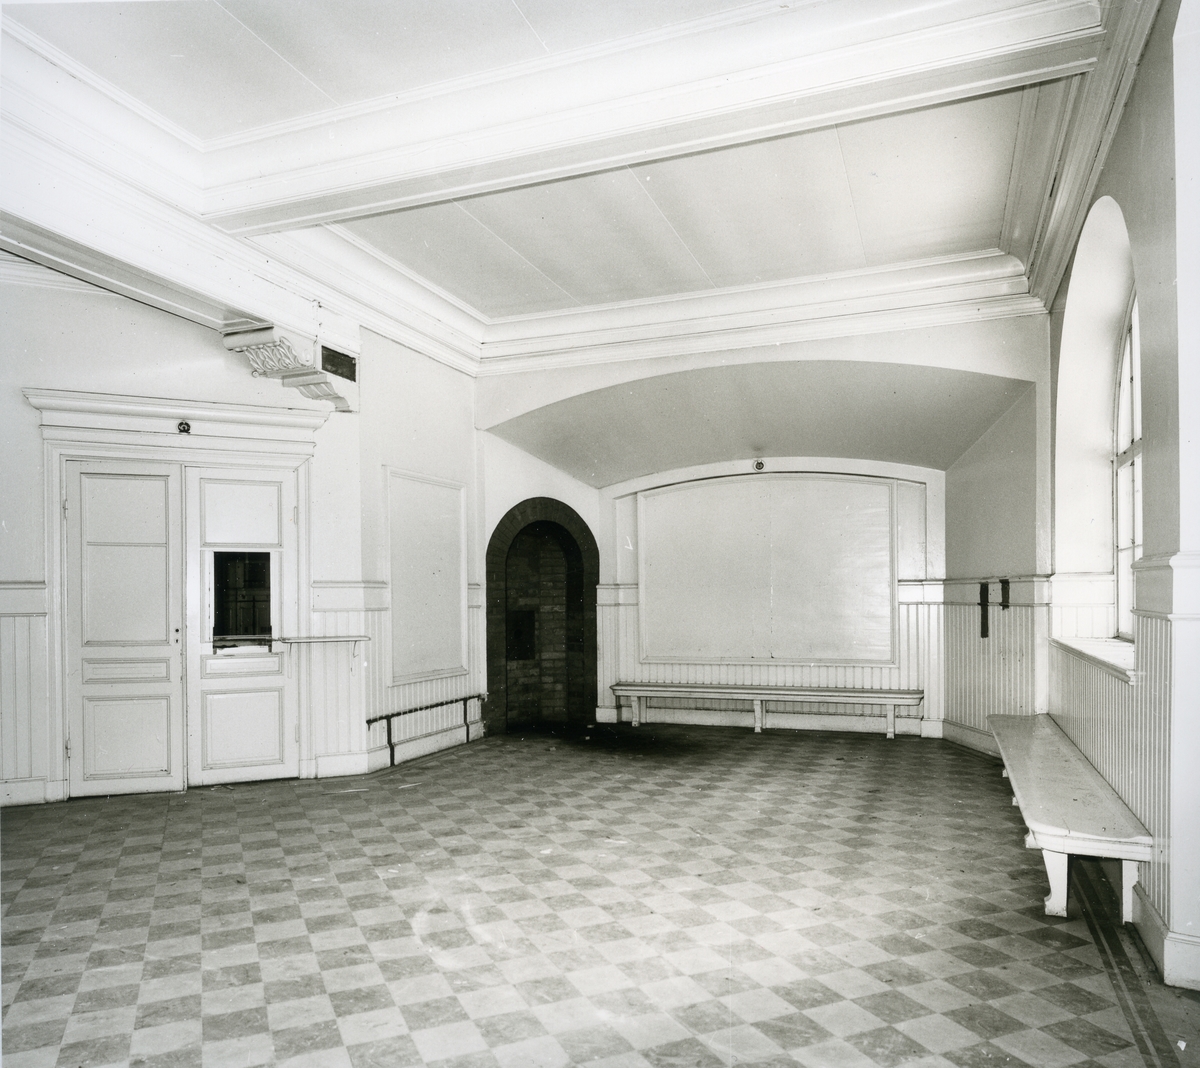 Karbennings sn.
Snytens järnvägsstation, interiör med dörrar och detaljer i taket, bänkar, rutigt golv, 1971.